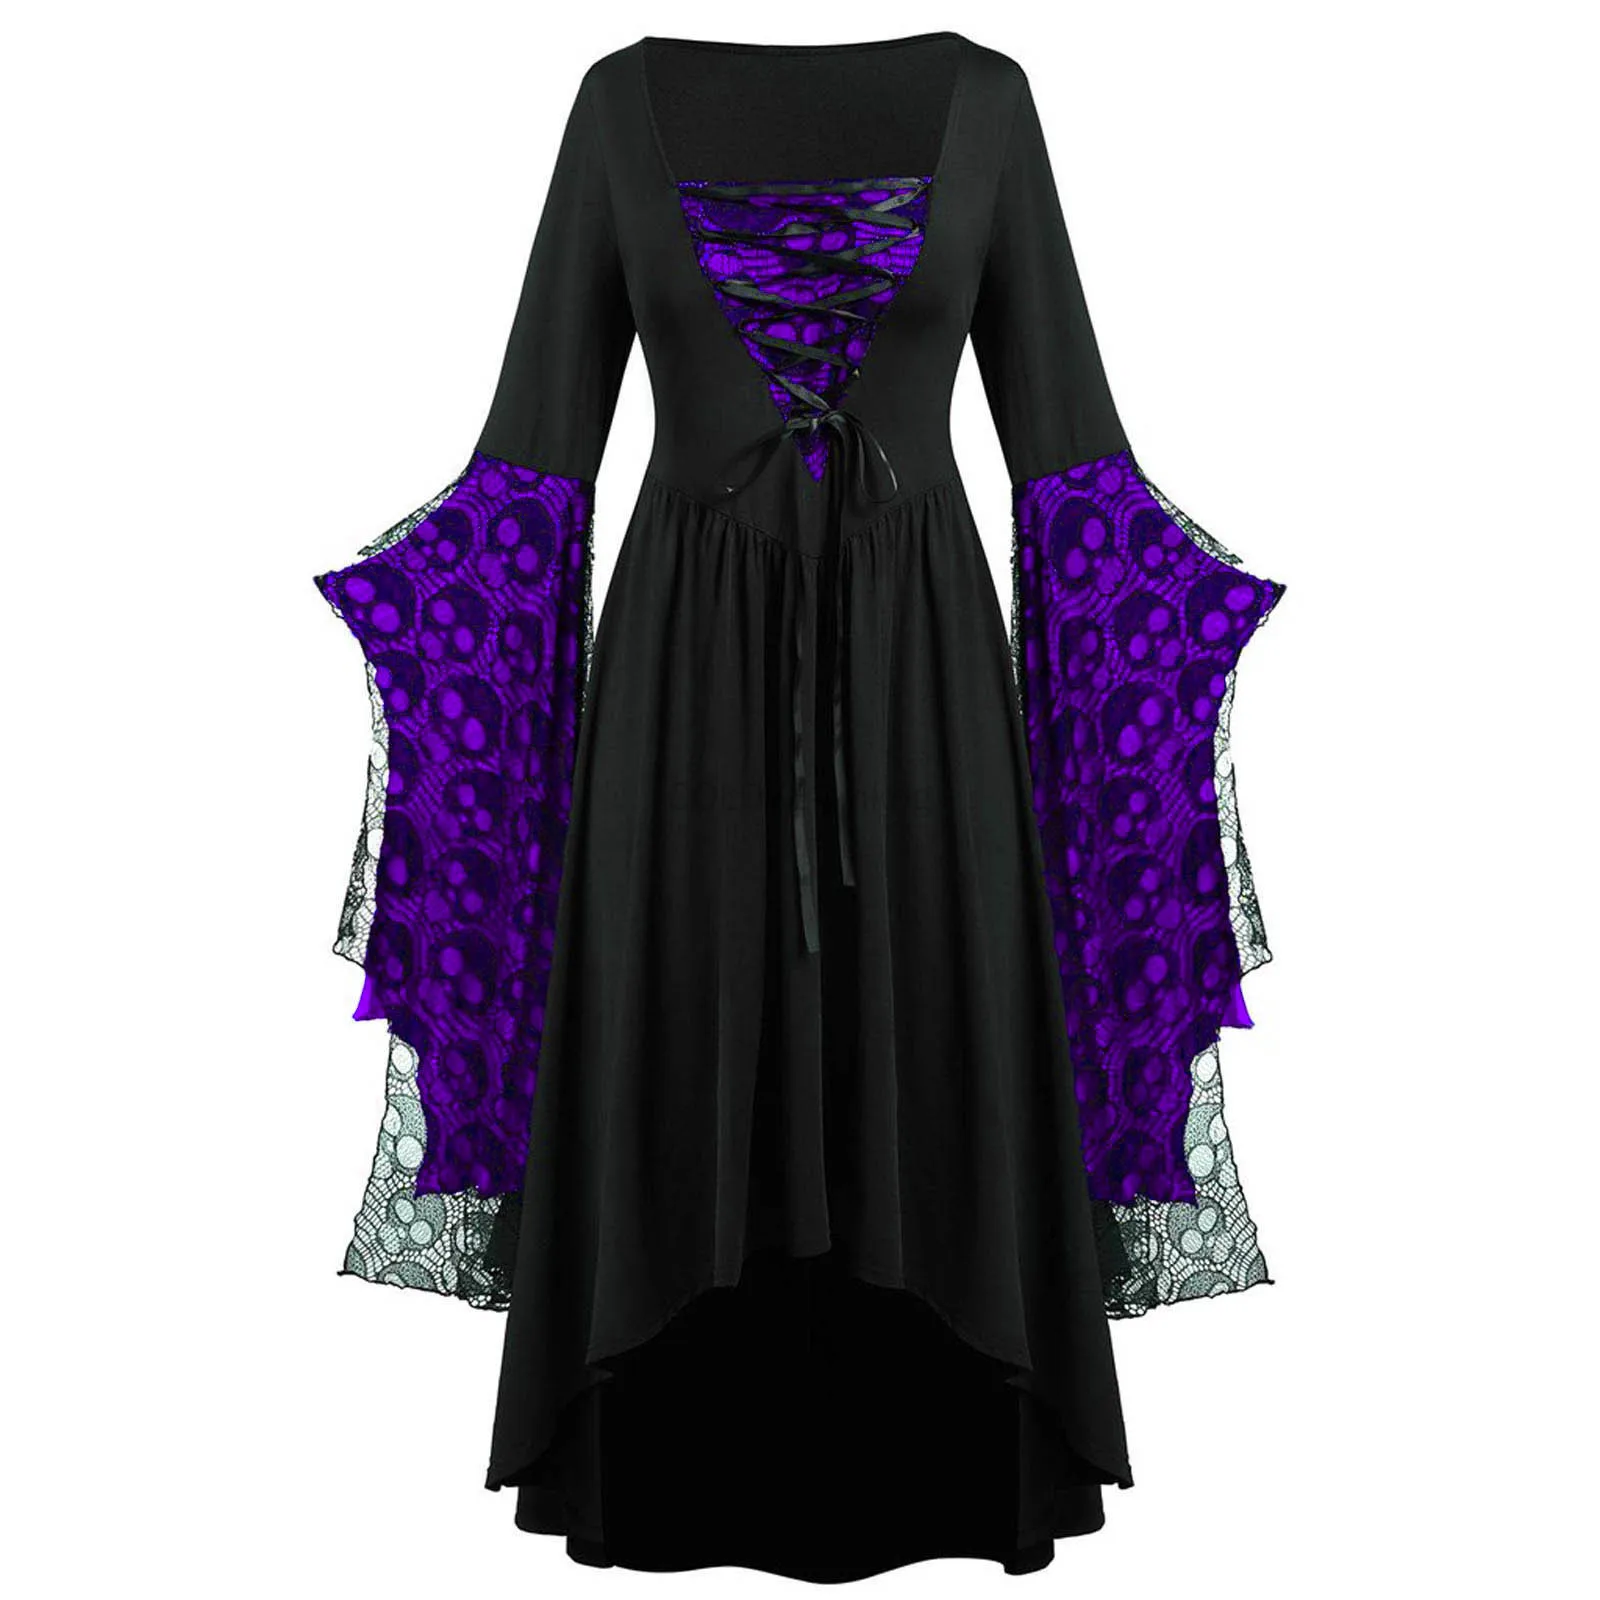 Damska średniowieczna gotycka kostium wampira czarownica sznurowana szlafrok z kapturem kostium na Halloween sukienki Maxi Cosplay